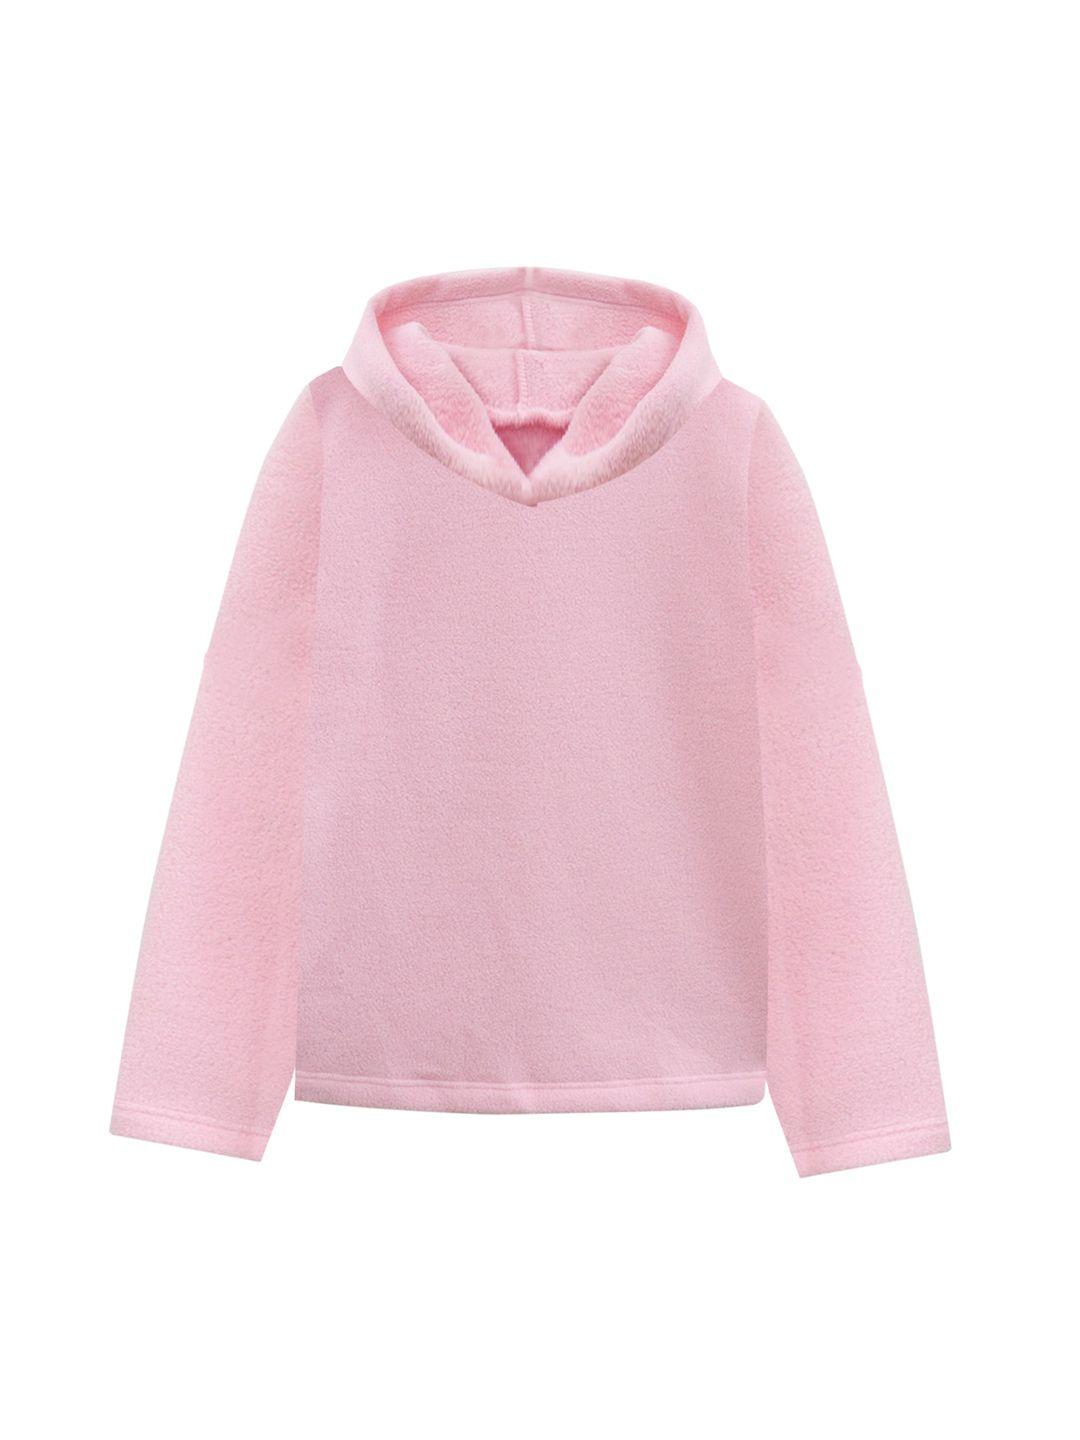 a t u n women pink hooded fleece sweatshirt